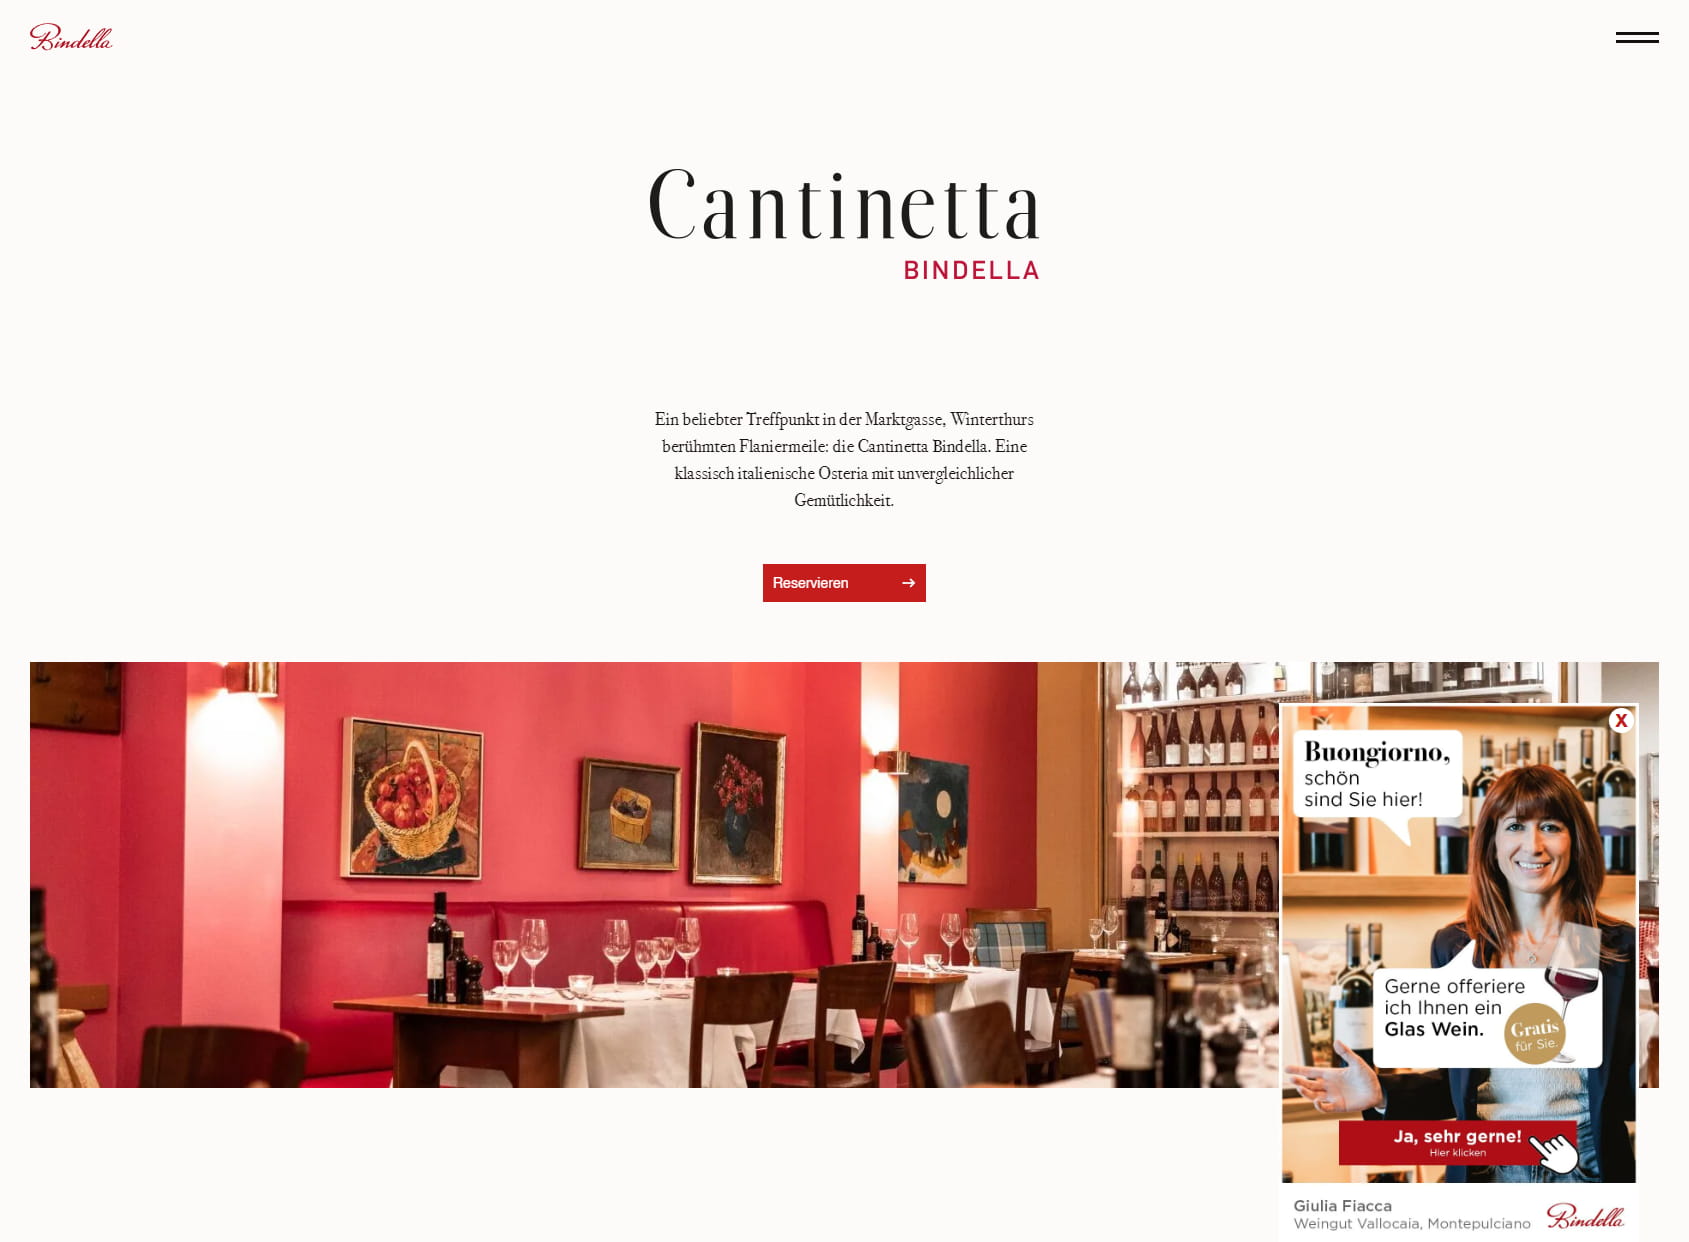 Cantinetta Bindella